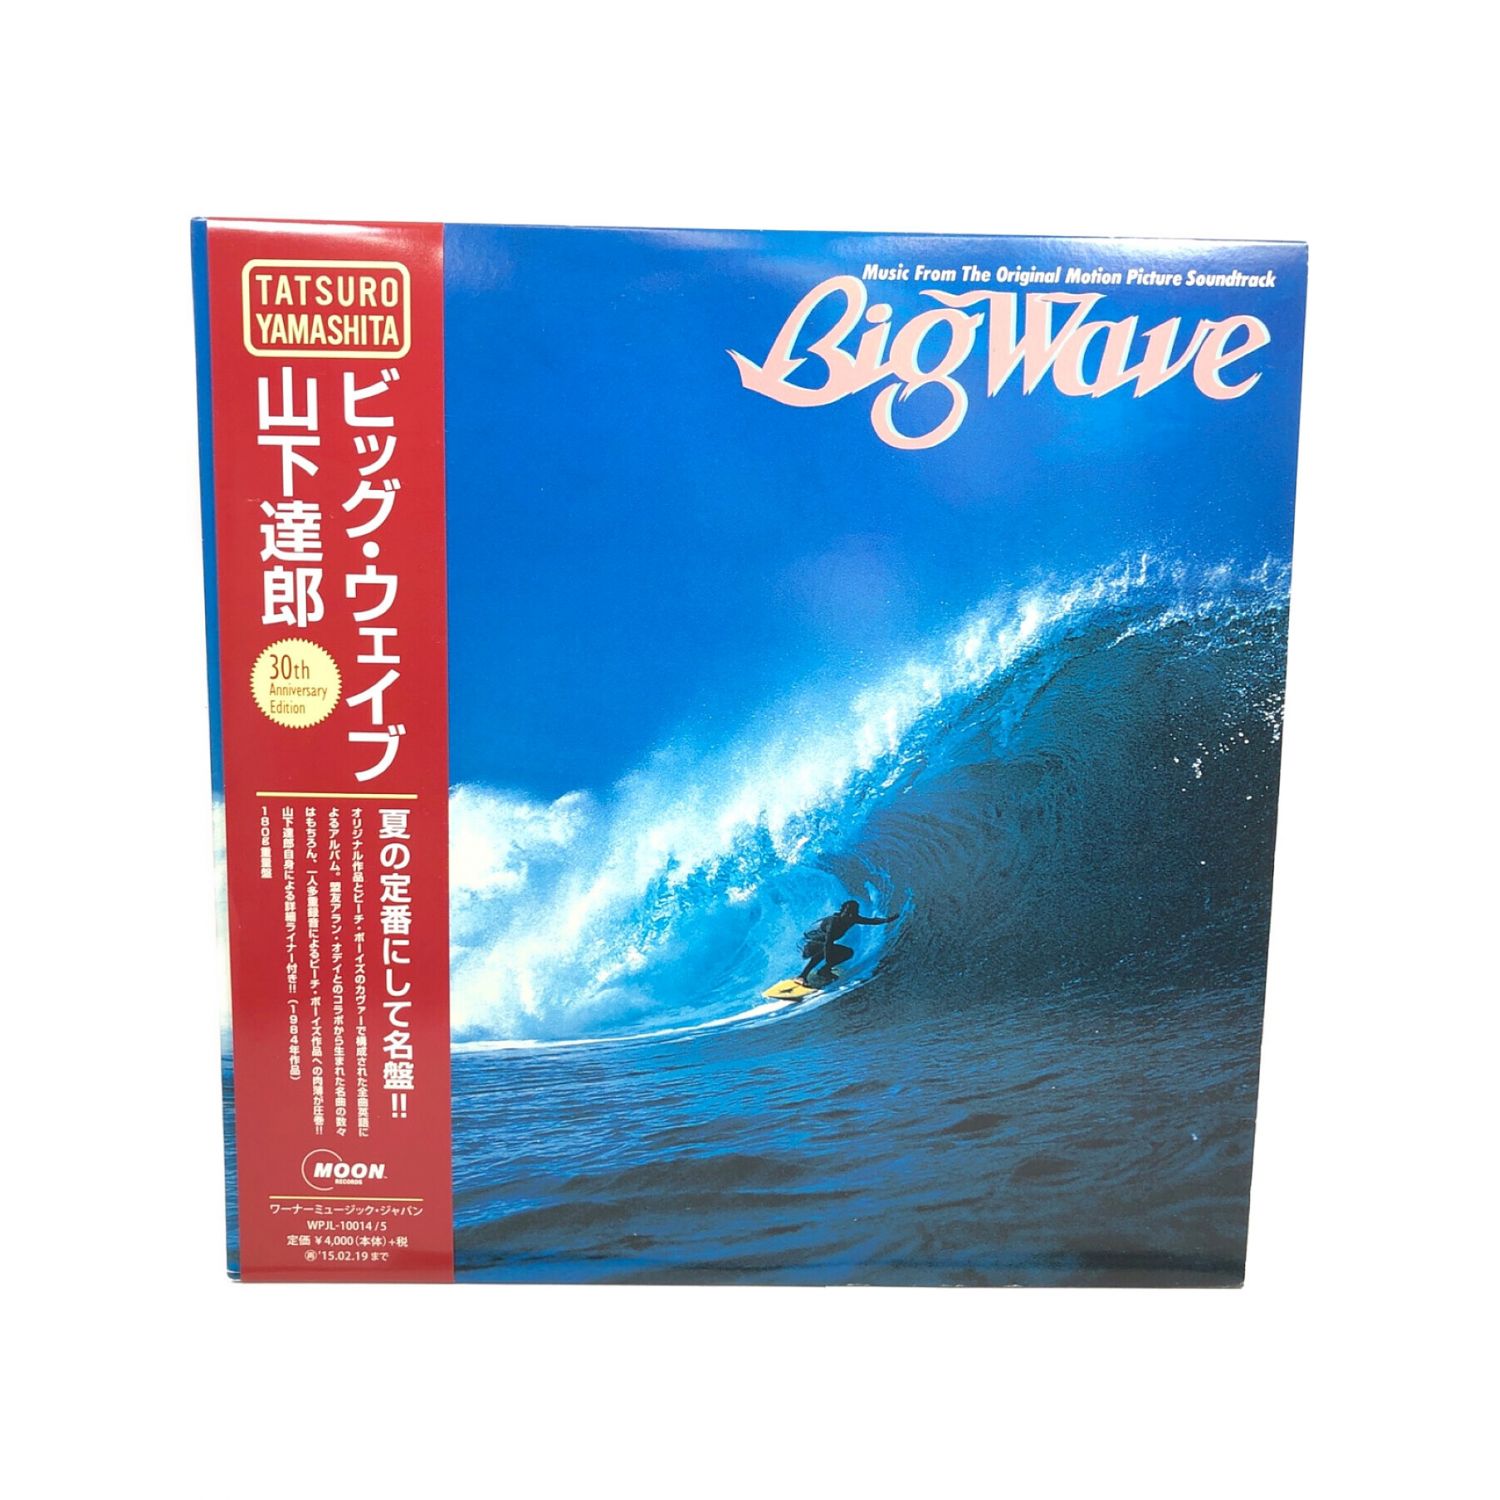 見事な 【オリジナルアナログ】山下達郎「BIG Wave WAVE」 ビーチ 